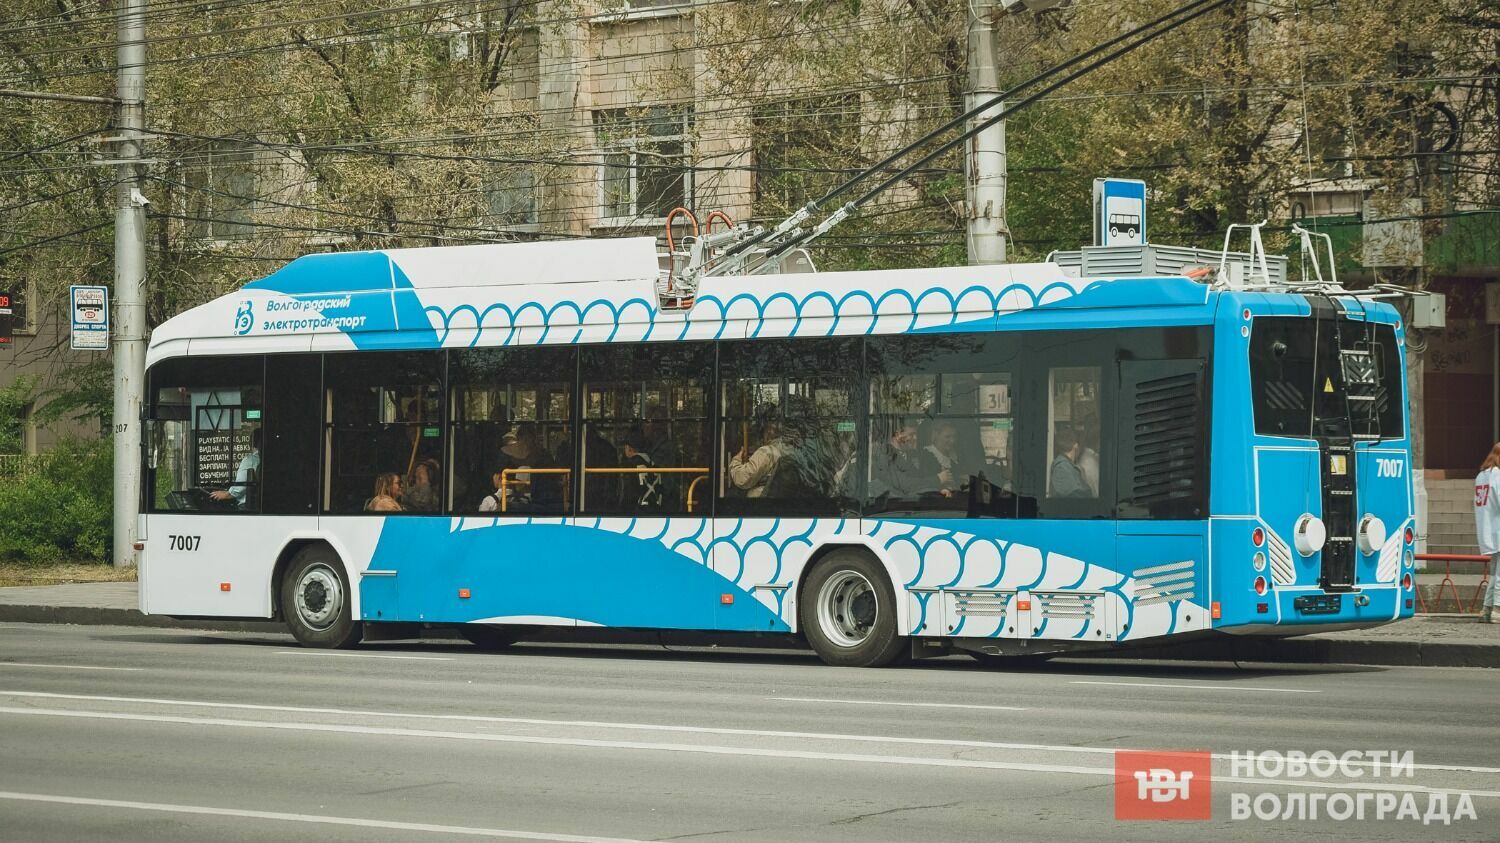 Для новых троллейбусов разработали индивидуальный дизайн